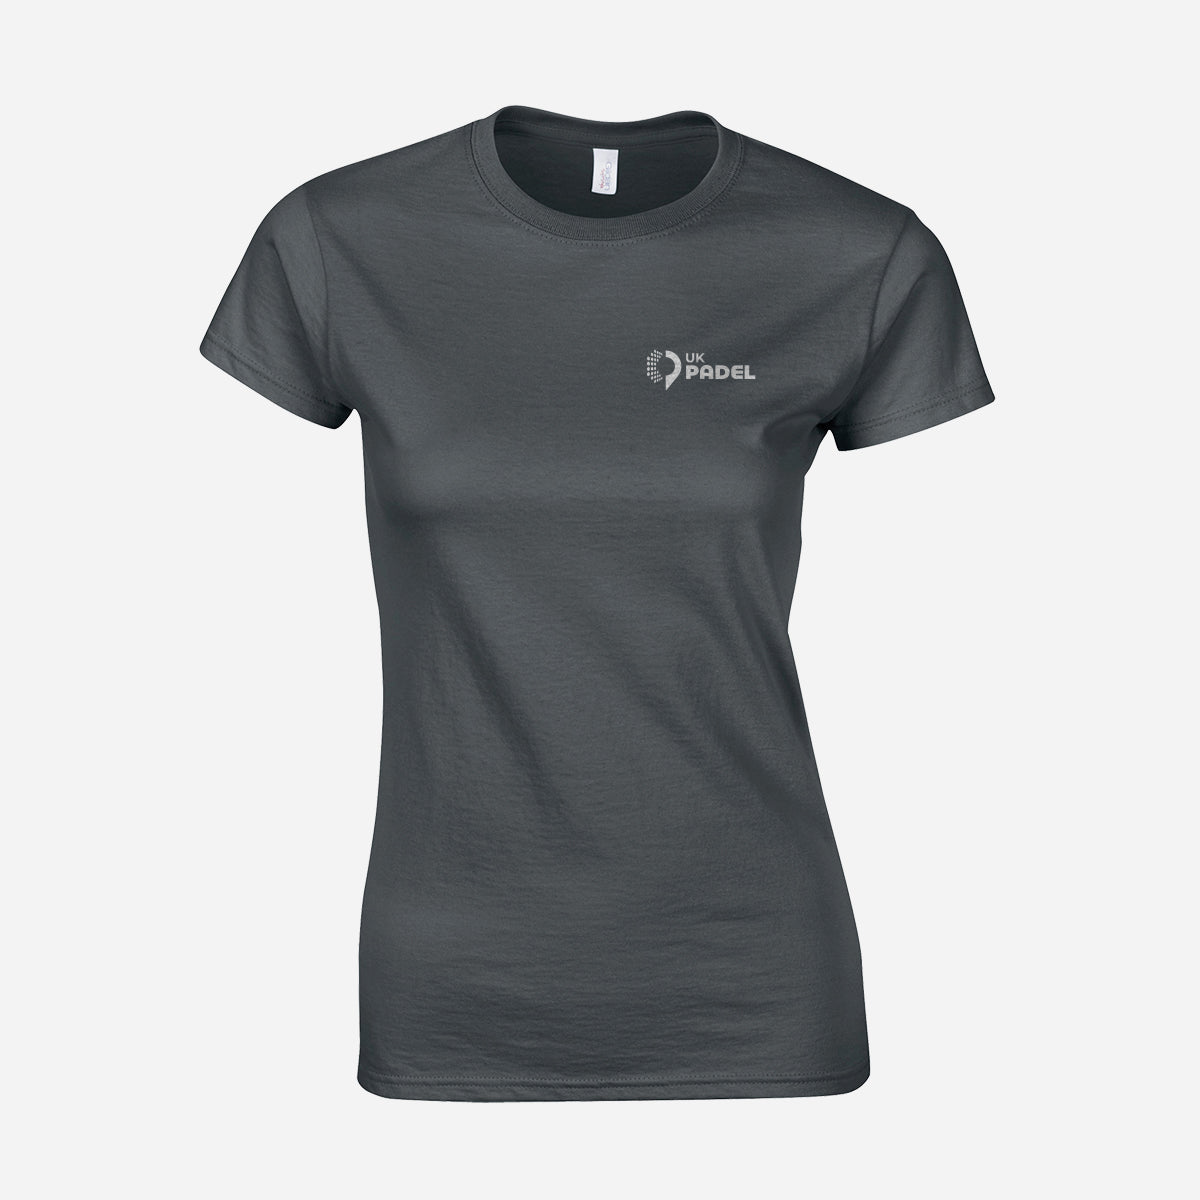 UK Padel Softstyle™ women's ringspun t-shirt ( UK Padel logo)